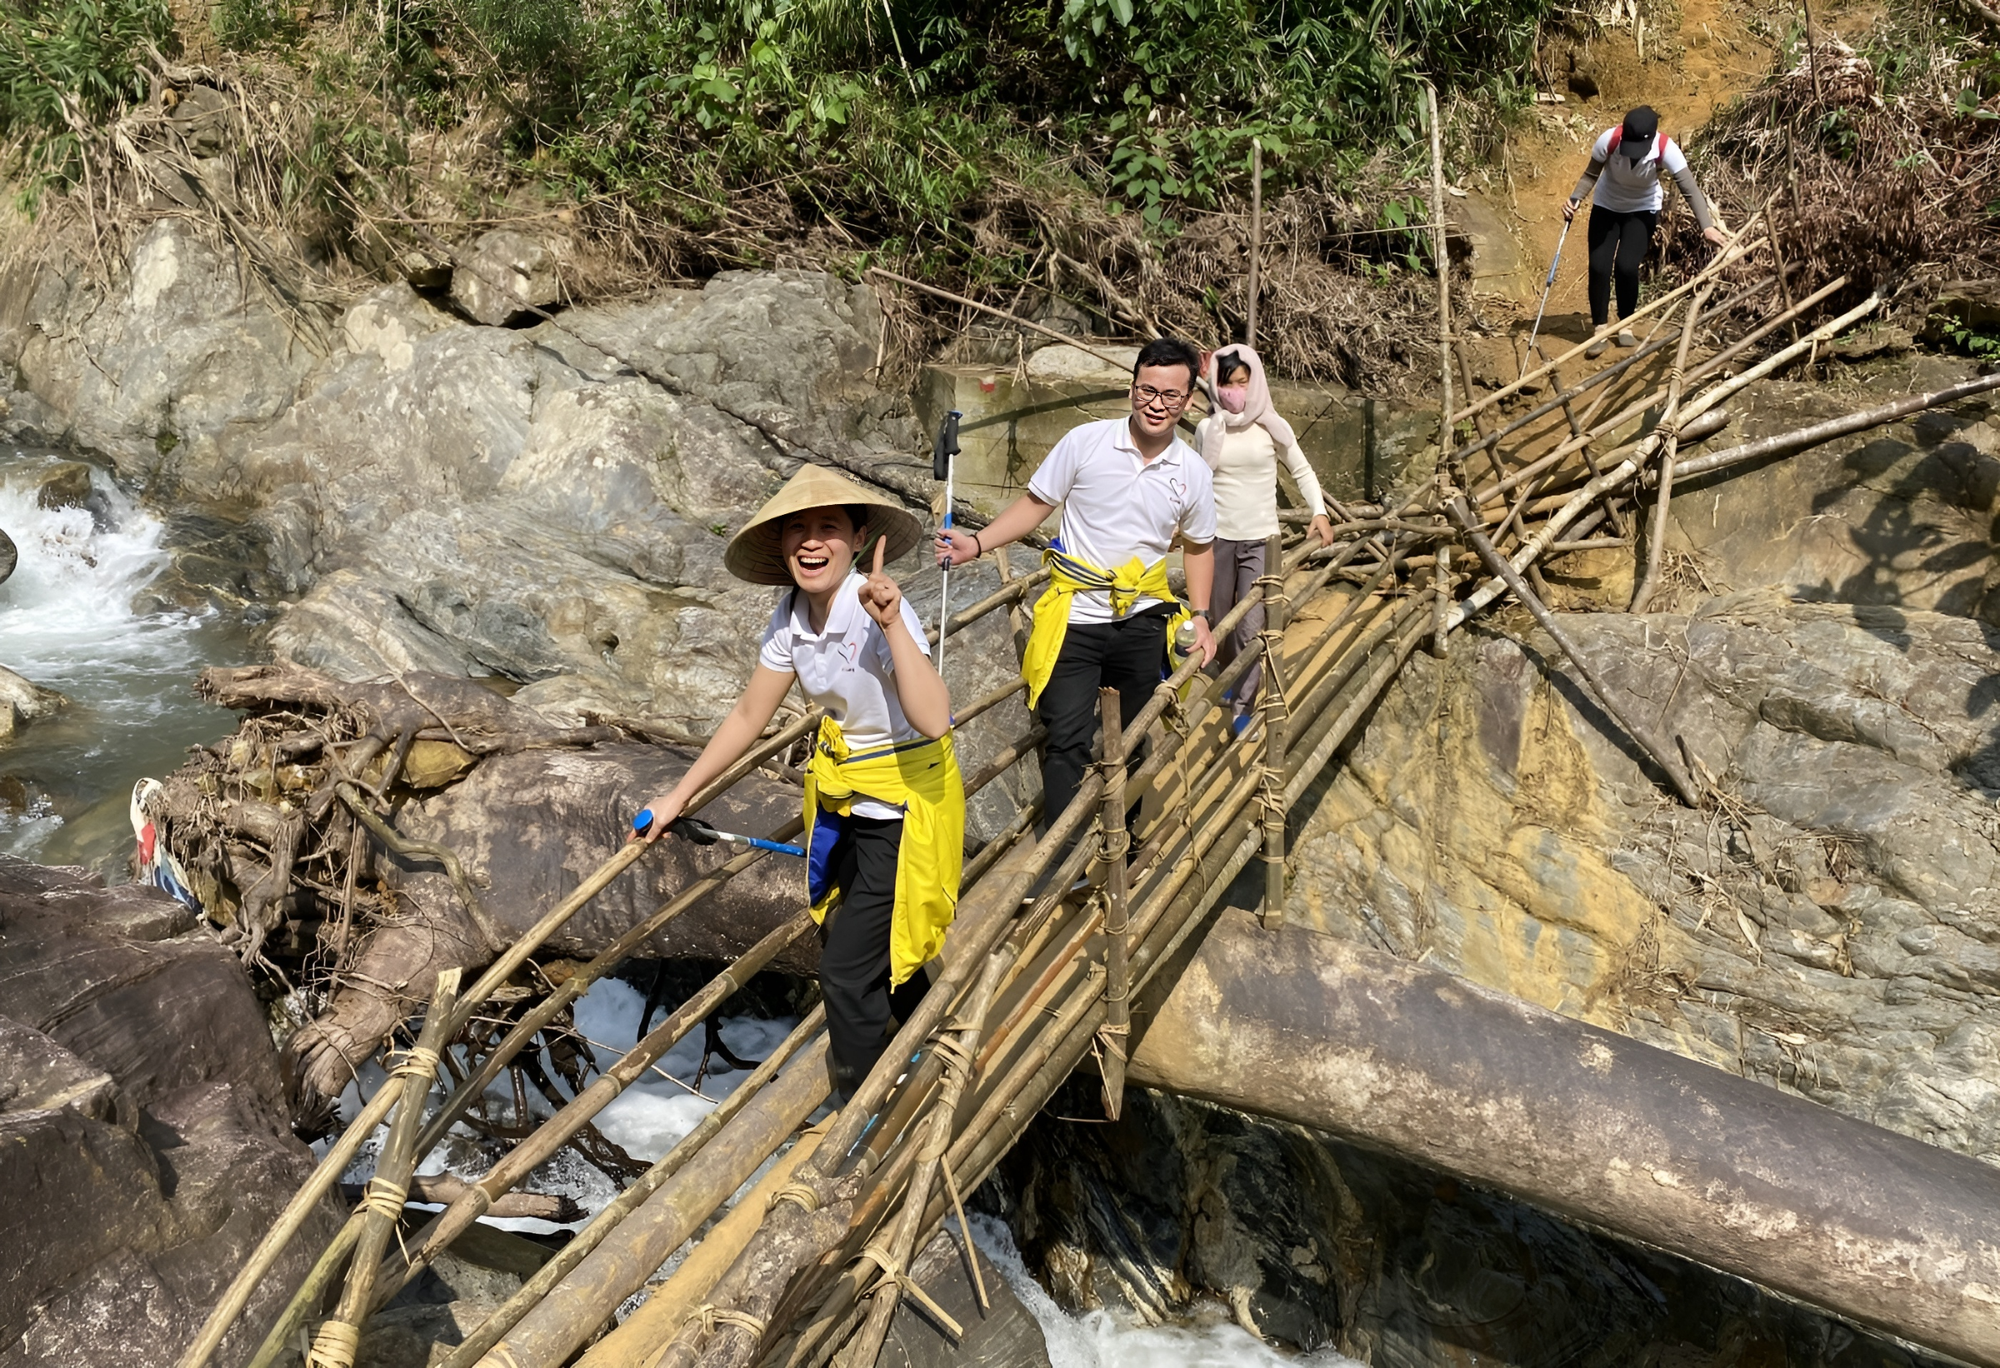 Nhóm bạn trẻ băng rừng, lội suối xây 17 ngôi trường cho học sinh vùng núi: "Các con đừng bỏ học nghe!" - Ảnh 2.